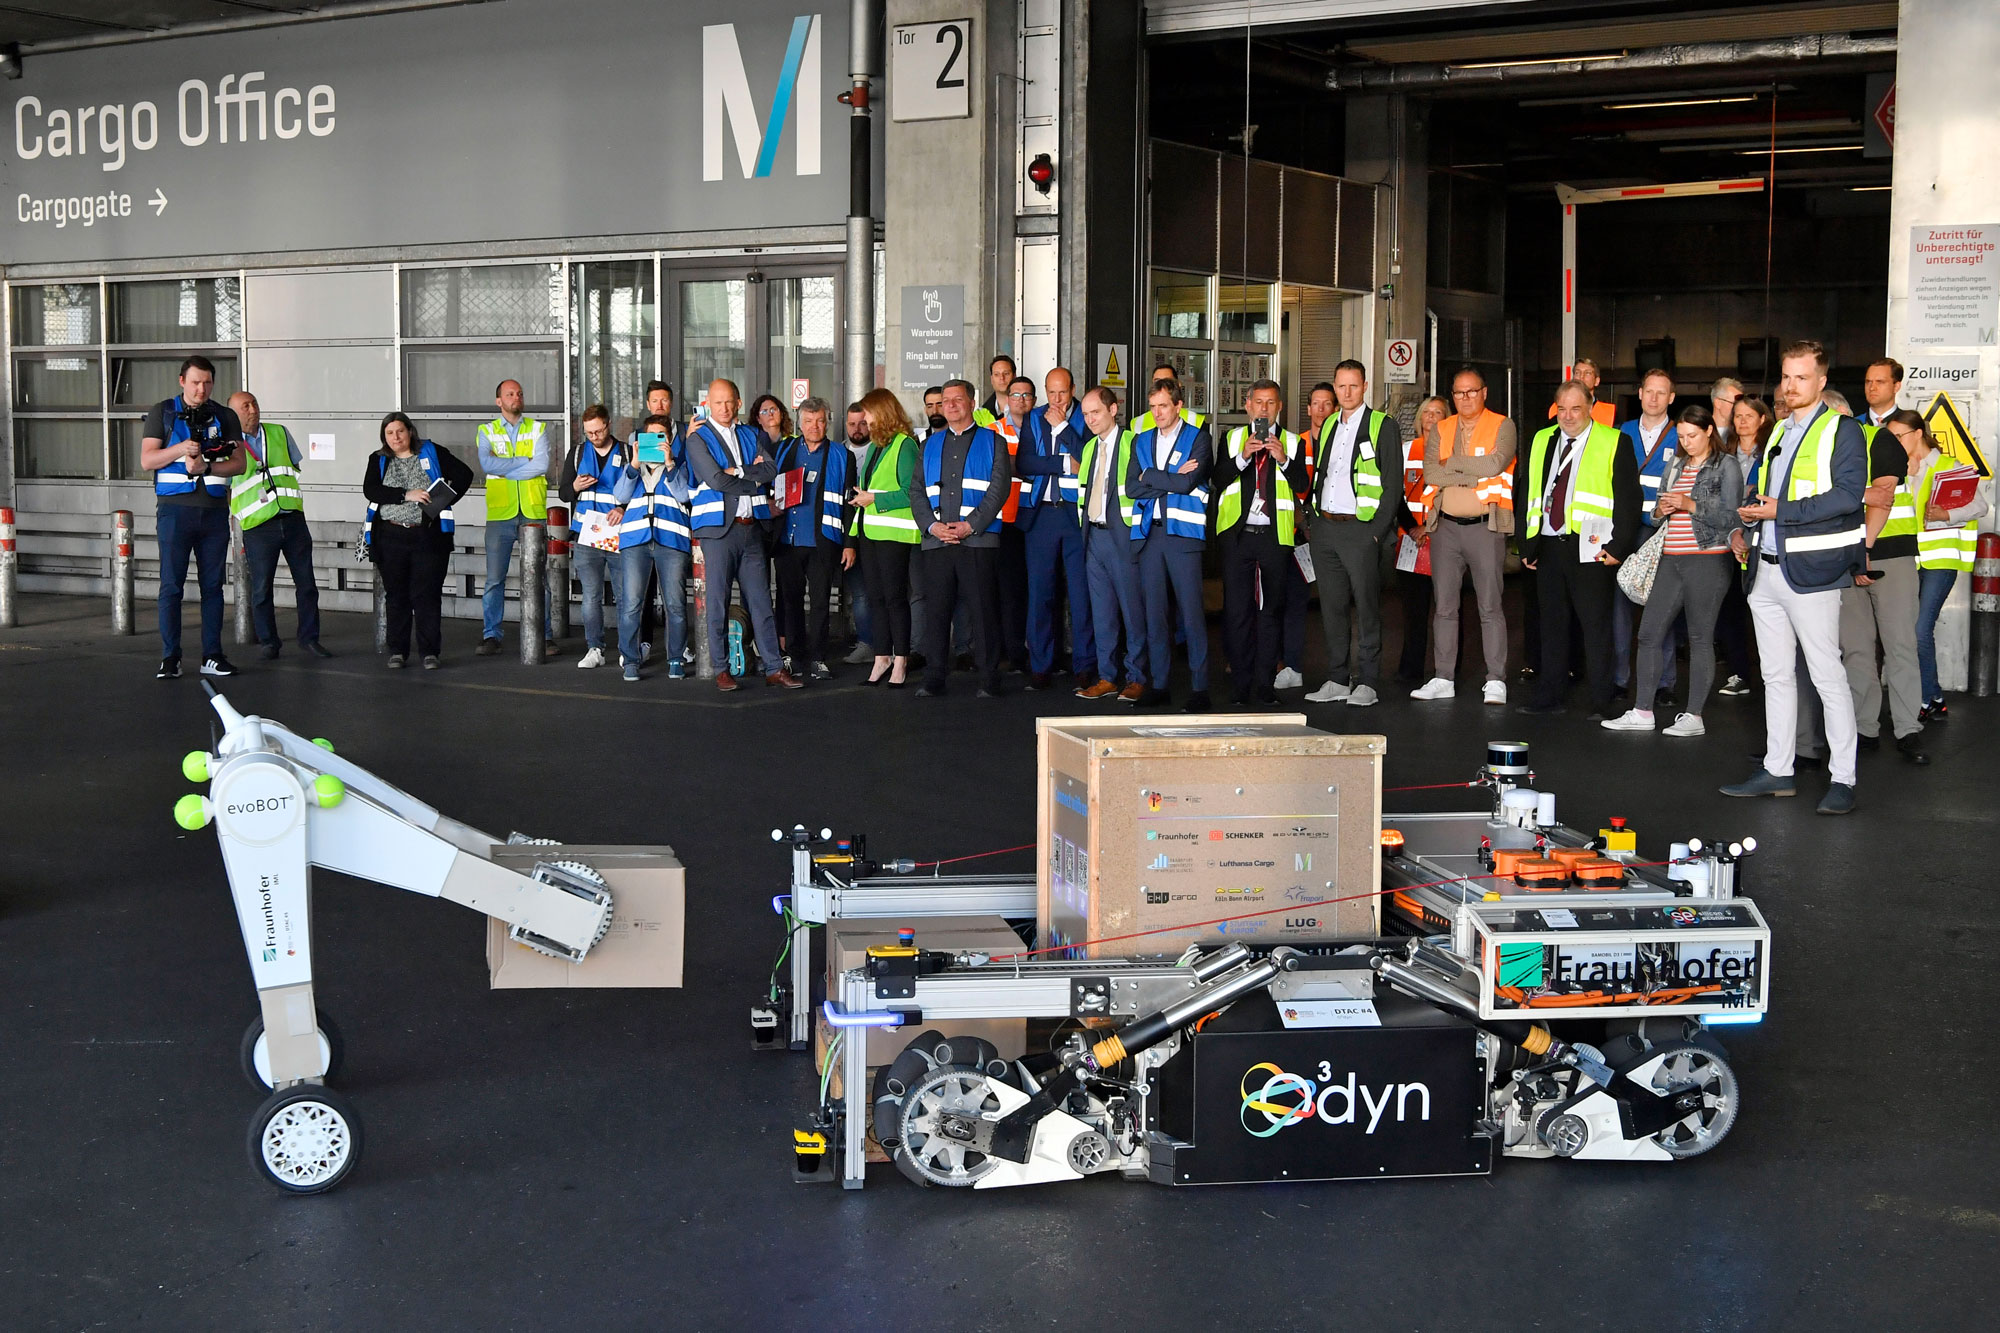 Roboter, einschließlich des Roboterhunds Spot, des omnidirektionalen Transportroboters O³dyn und des evoBots, bei der Luftfrachtabfertigung am Flughafen München, umgeben von Branchenakteuren im Hintergrund während der Präsentation des Forschungsprojekts DTAC.